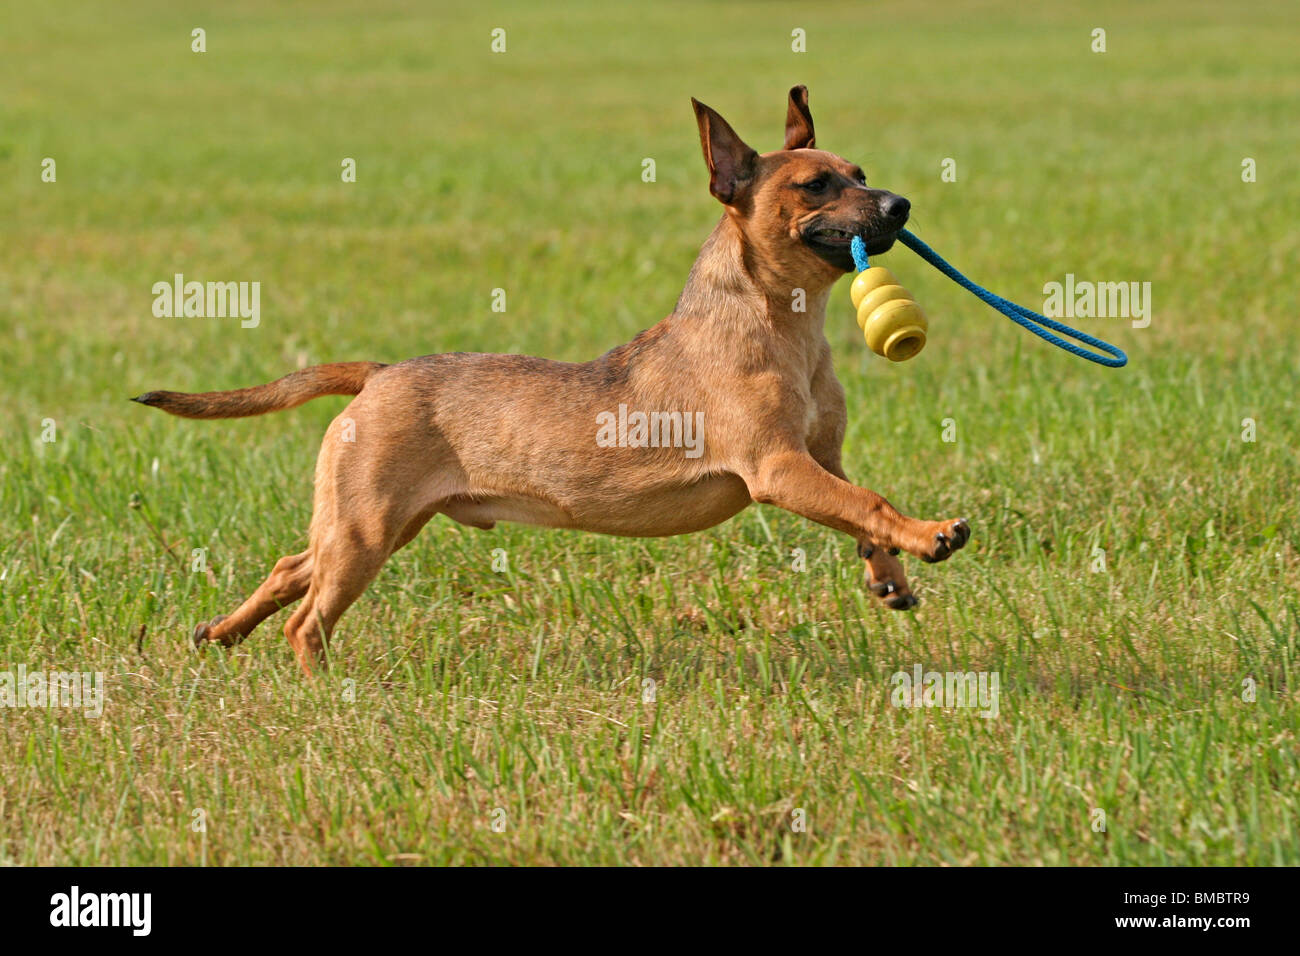 rennender Hund / dog Photo - Alamy